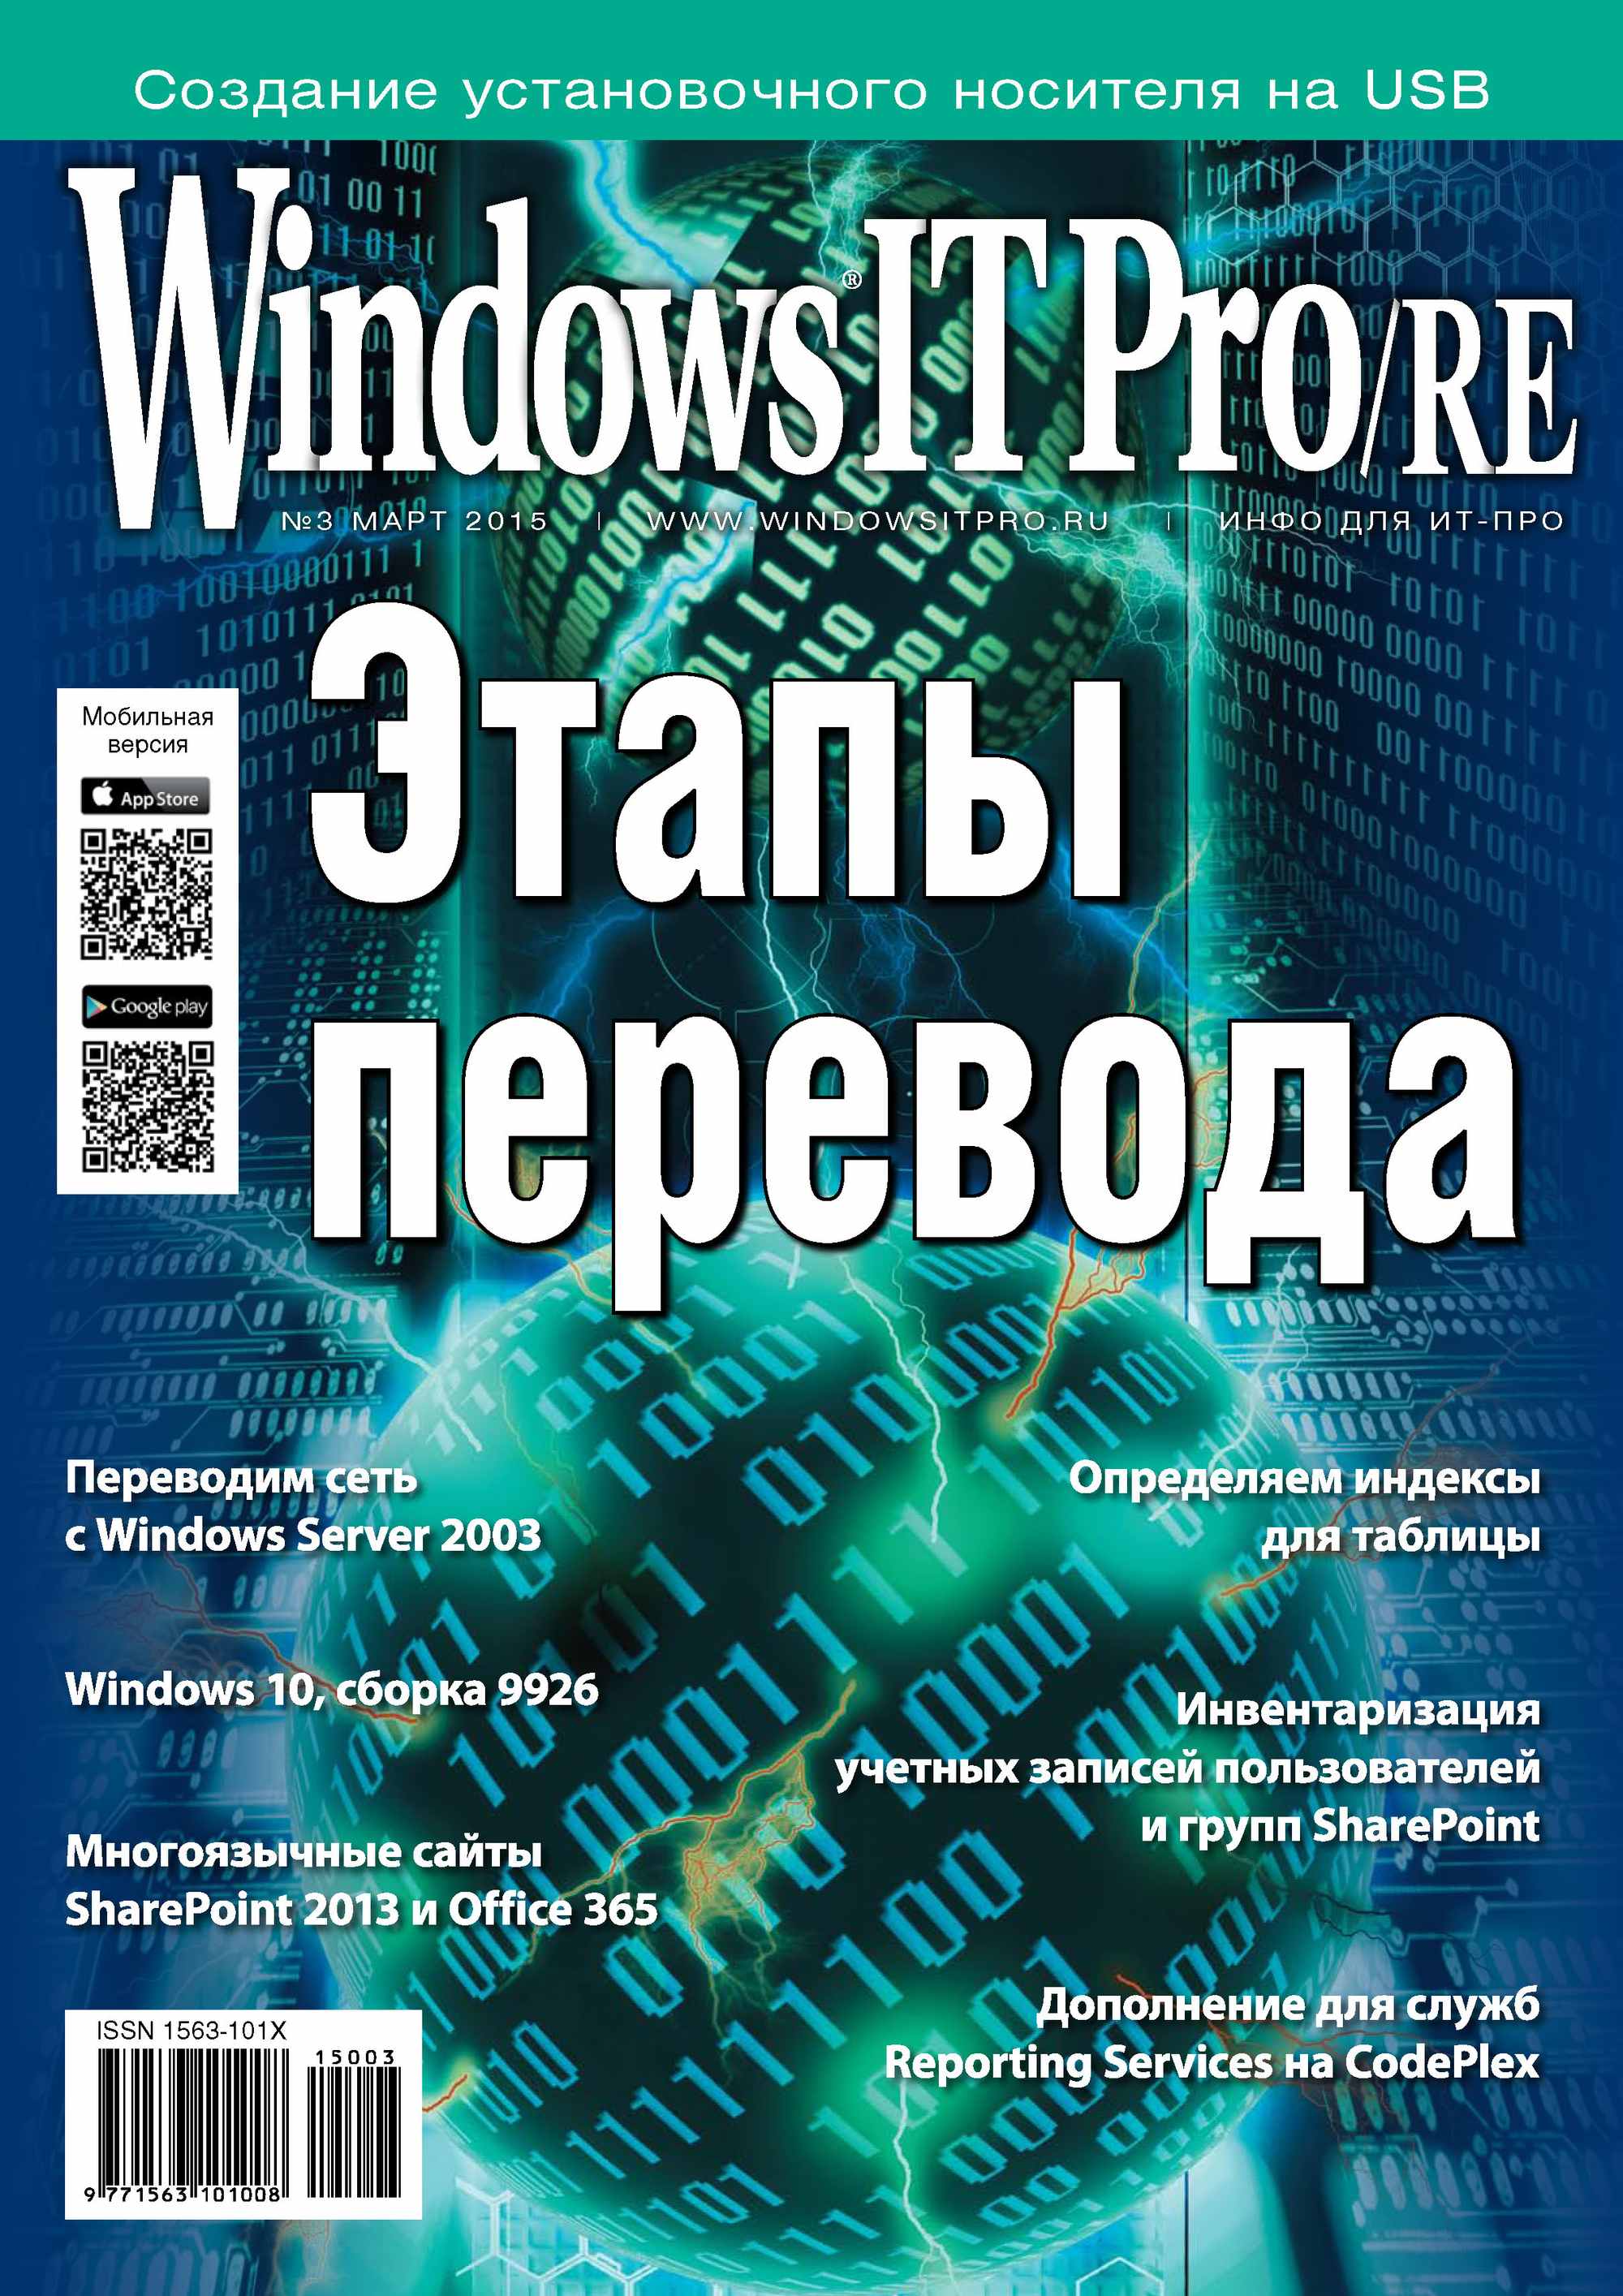 Windows IT Pro/RE№03/2015